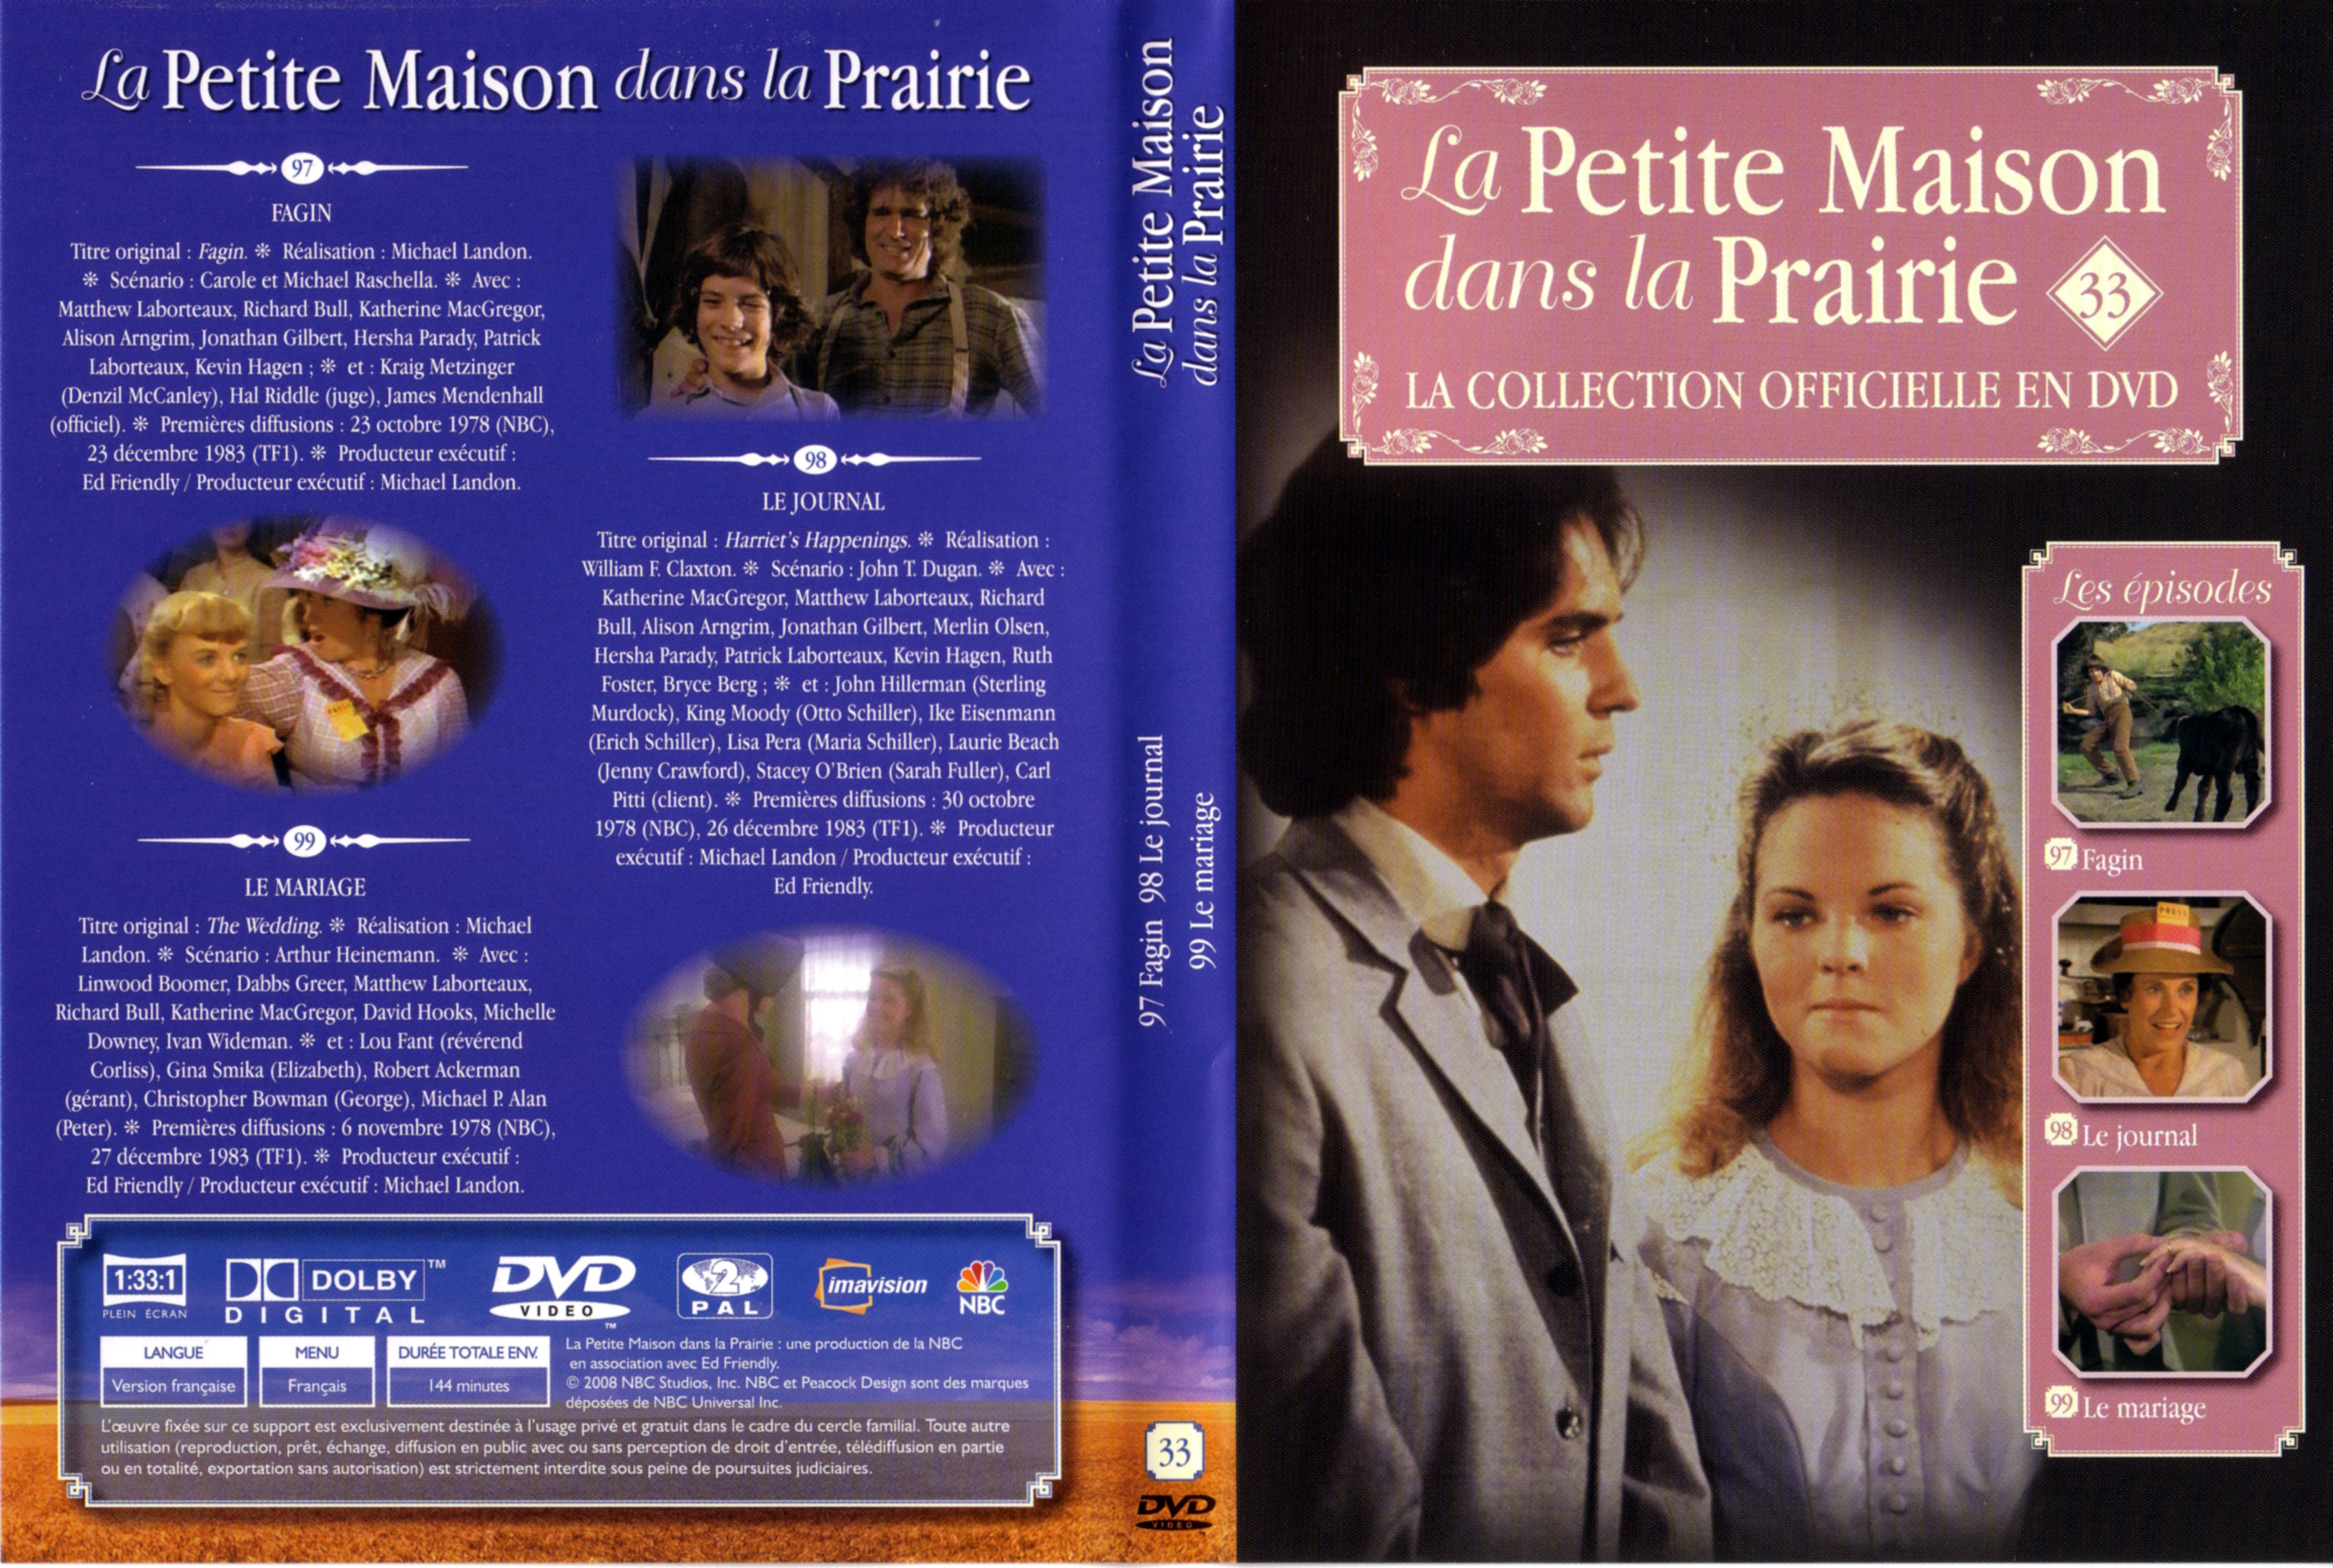 Jaquette DVD La petite maison dans la prairie La Collection vol 33